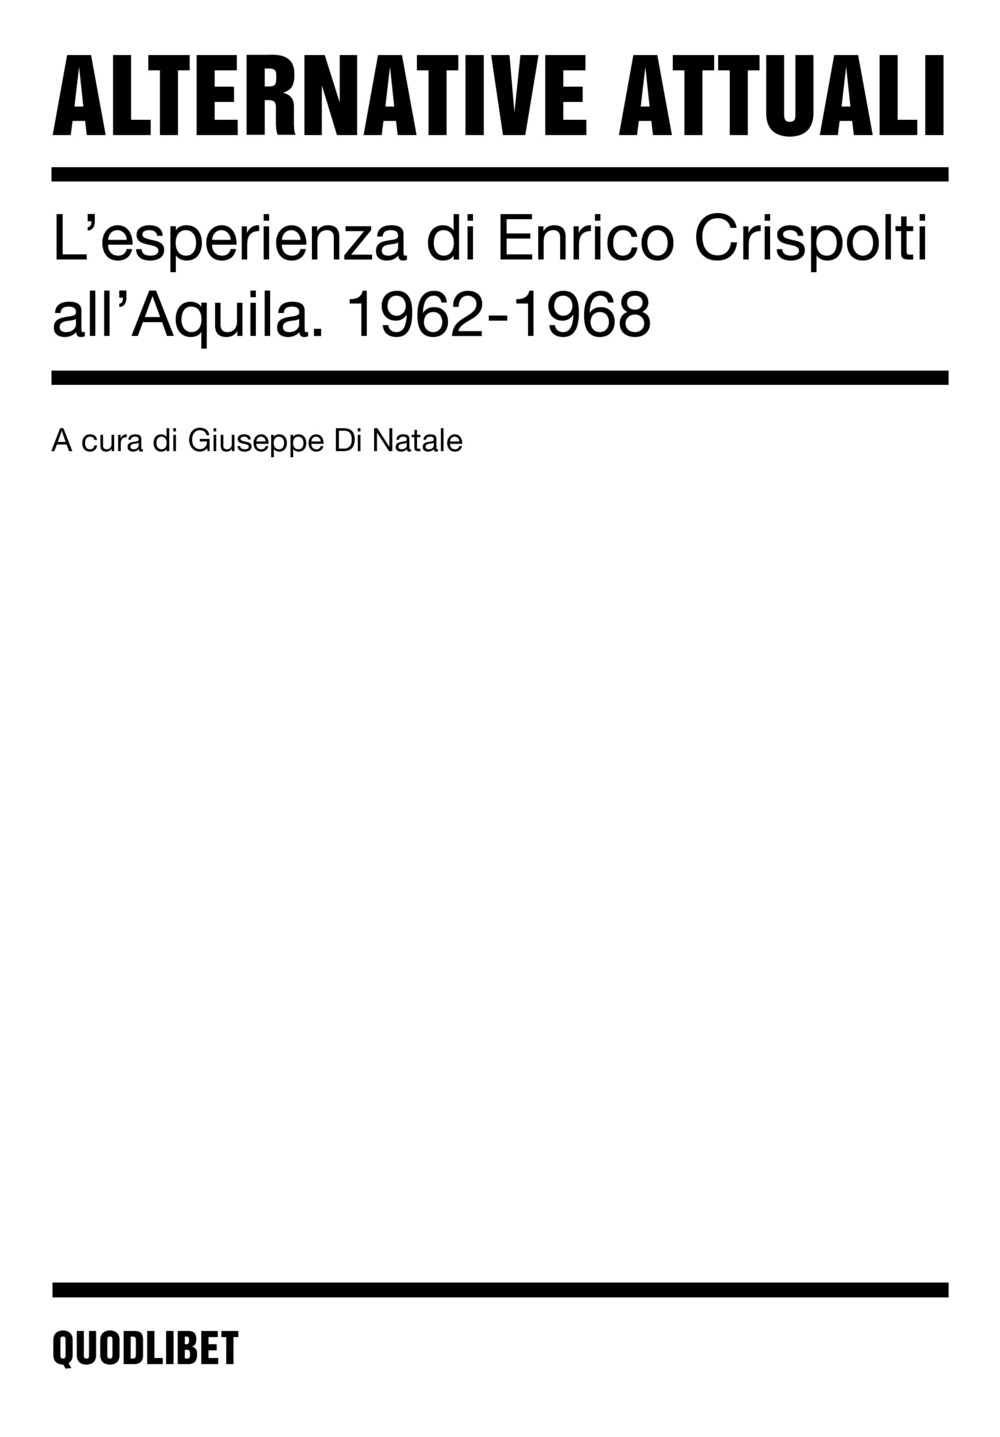 Alternative attuali. L'esperienza di Enrico Crispolti all'Aquila. 1962-1968